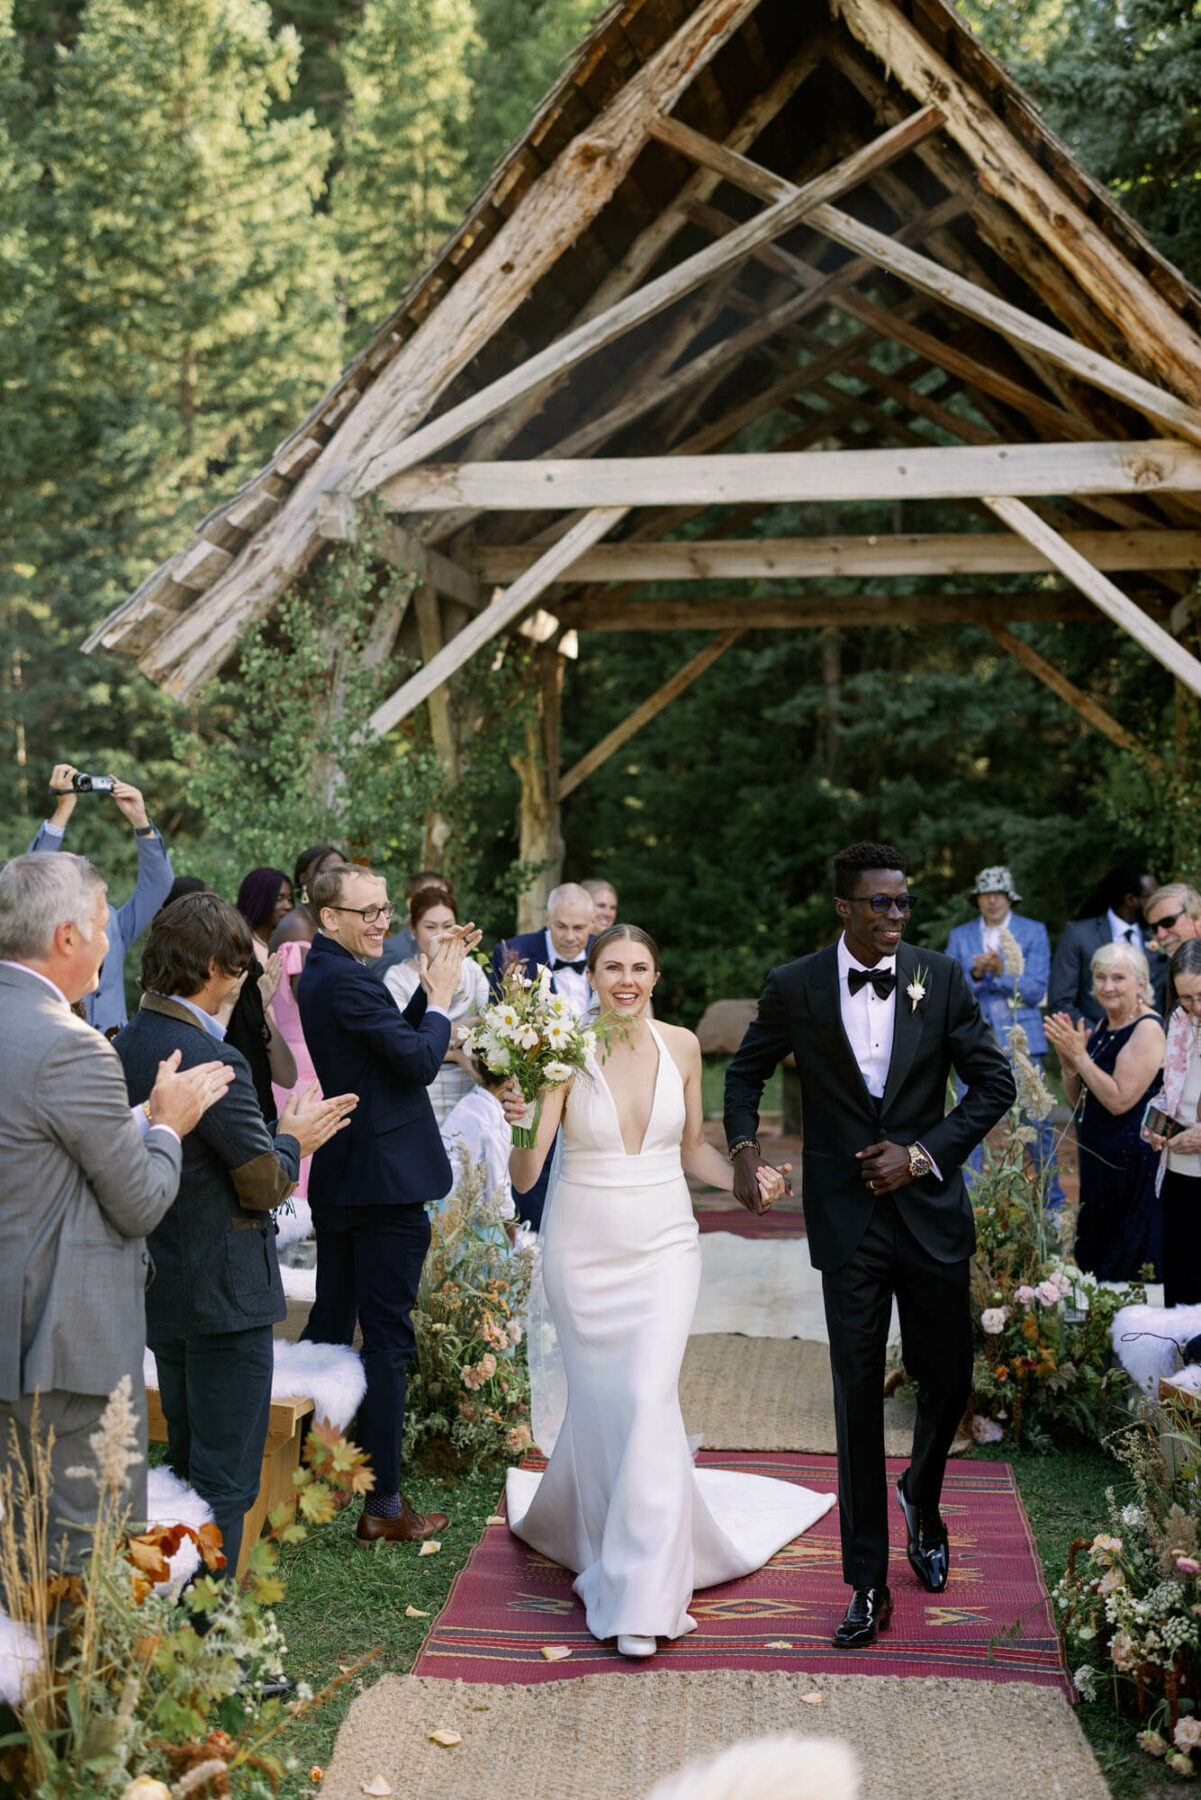 Dunton Hotsprings Wedding in Telluride phototgraphed by Tara Marolda